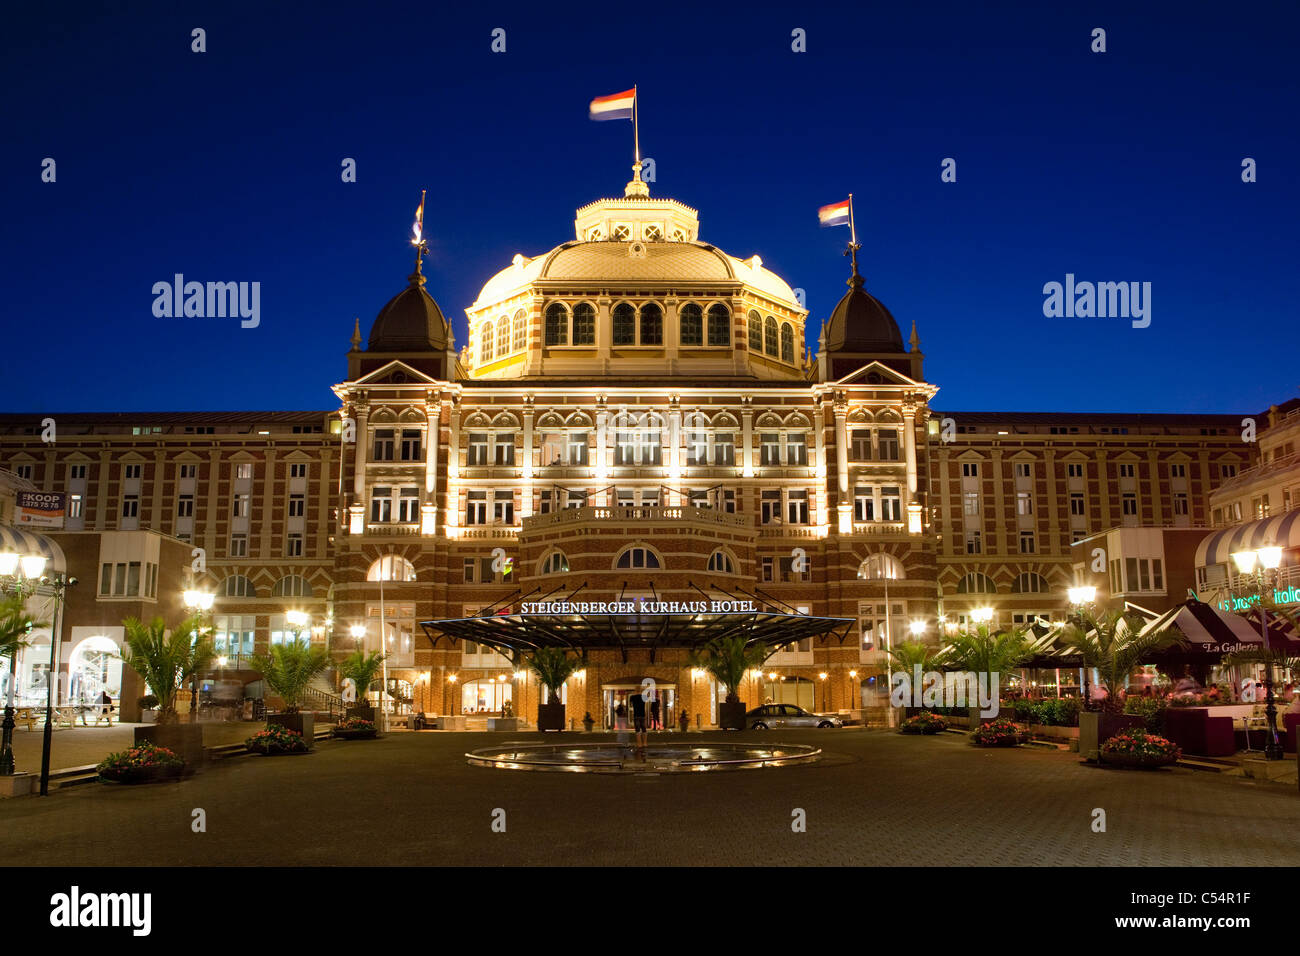 The Netherlands, Scheveningen near The Hague, hotel called Grand Hotel Amrâth Kurhaus. Dusk. Stock Photo